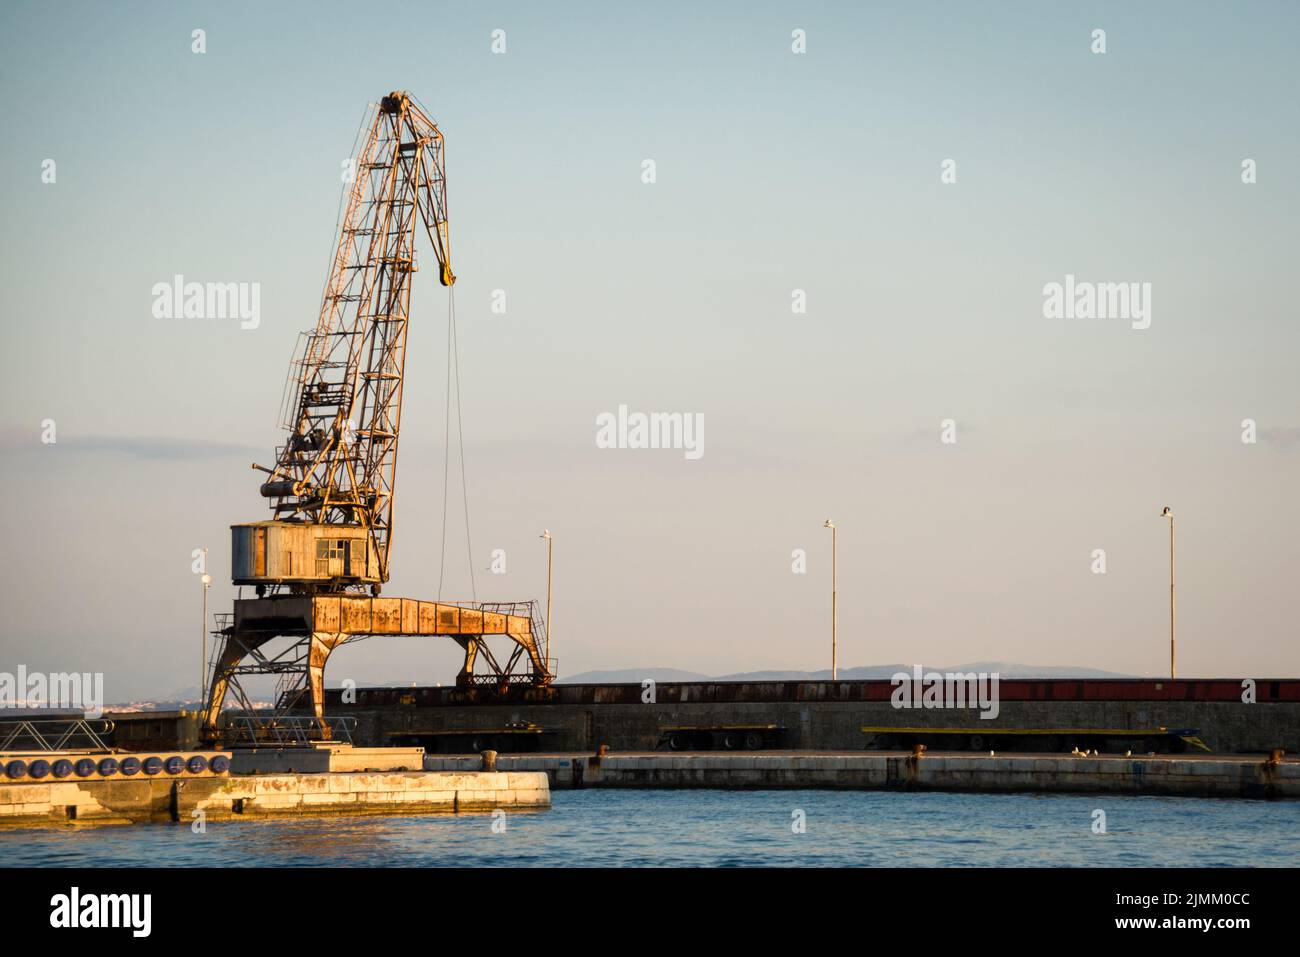 Cranes in the ship's port as silhouettes, in Rijeka in Croatia Stock Photo